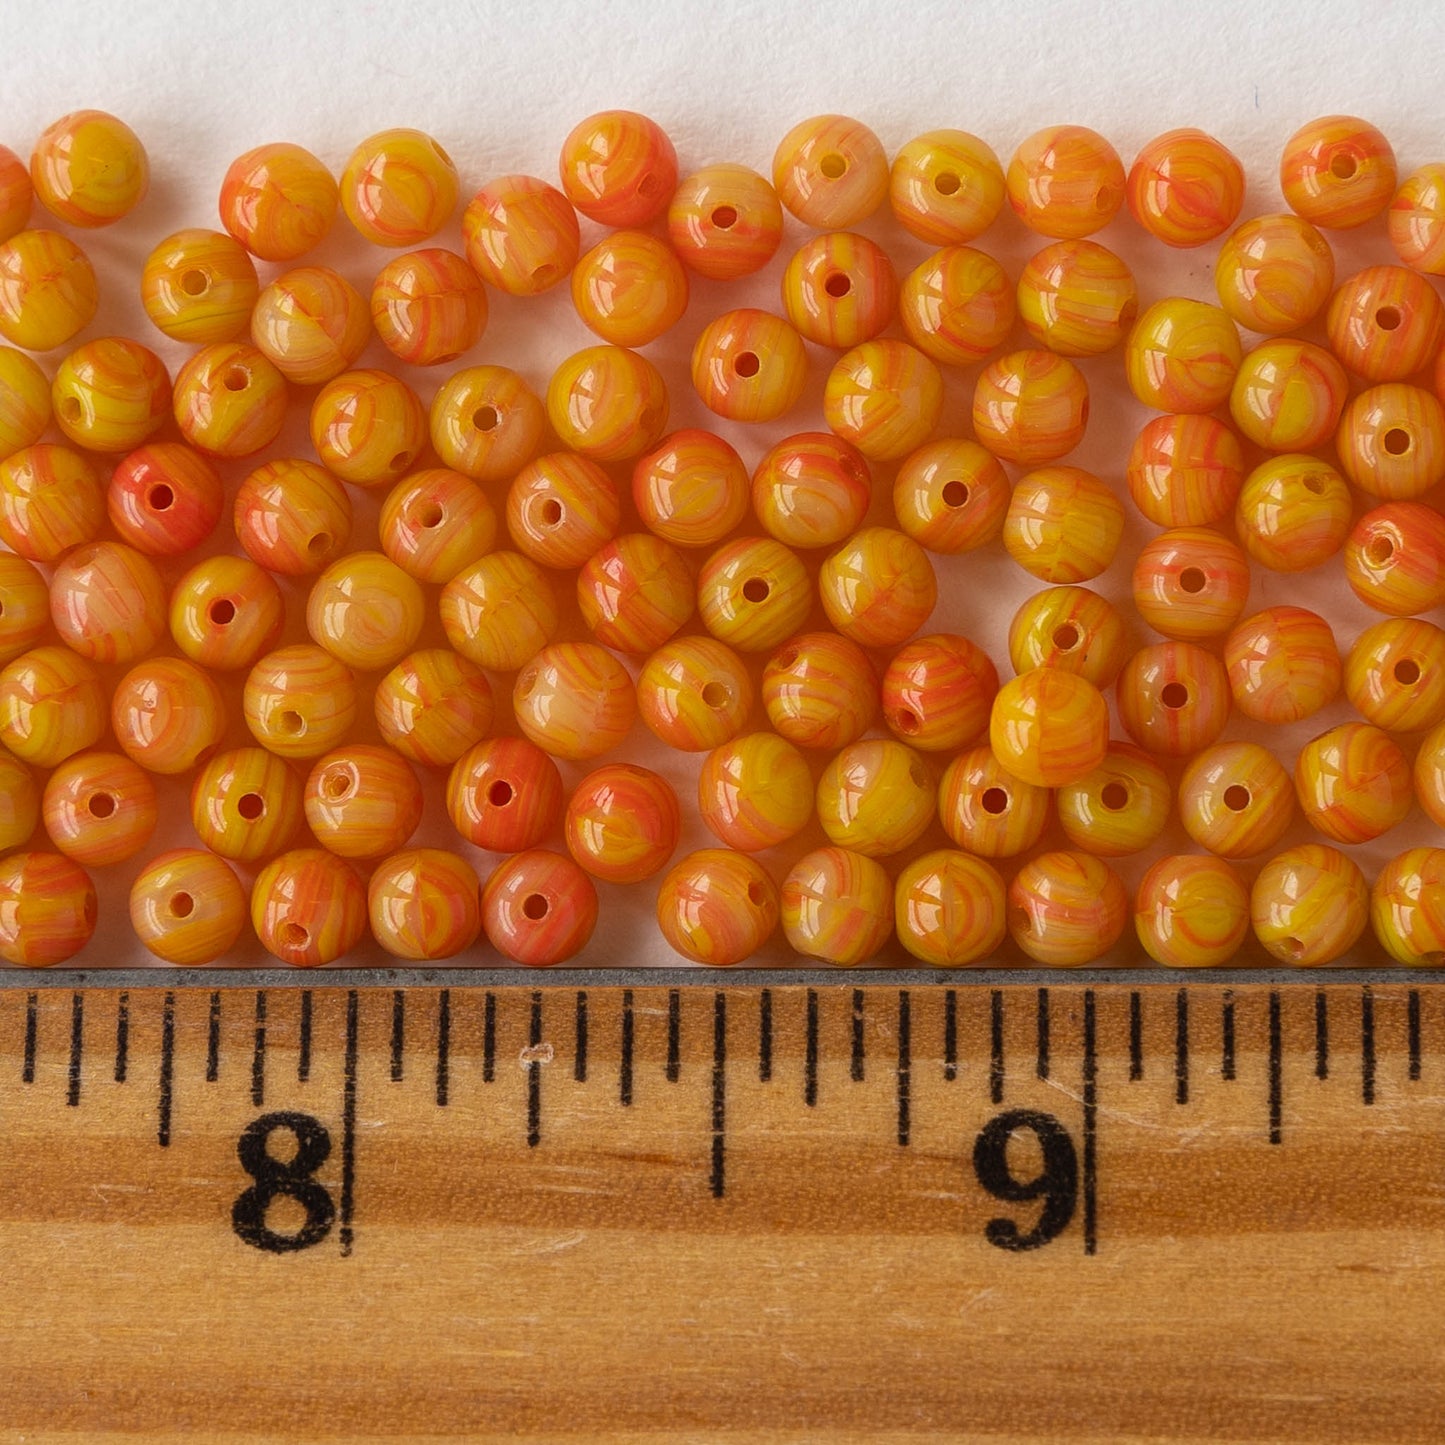 4mm Round Glass Beads - Orange Yellow Mix - 120 Beads